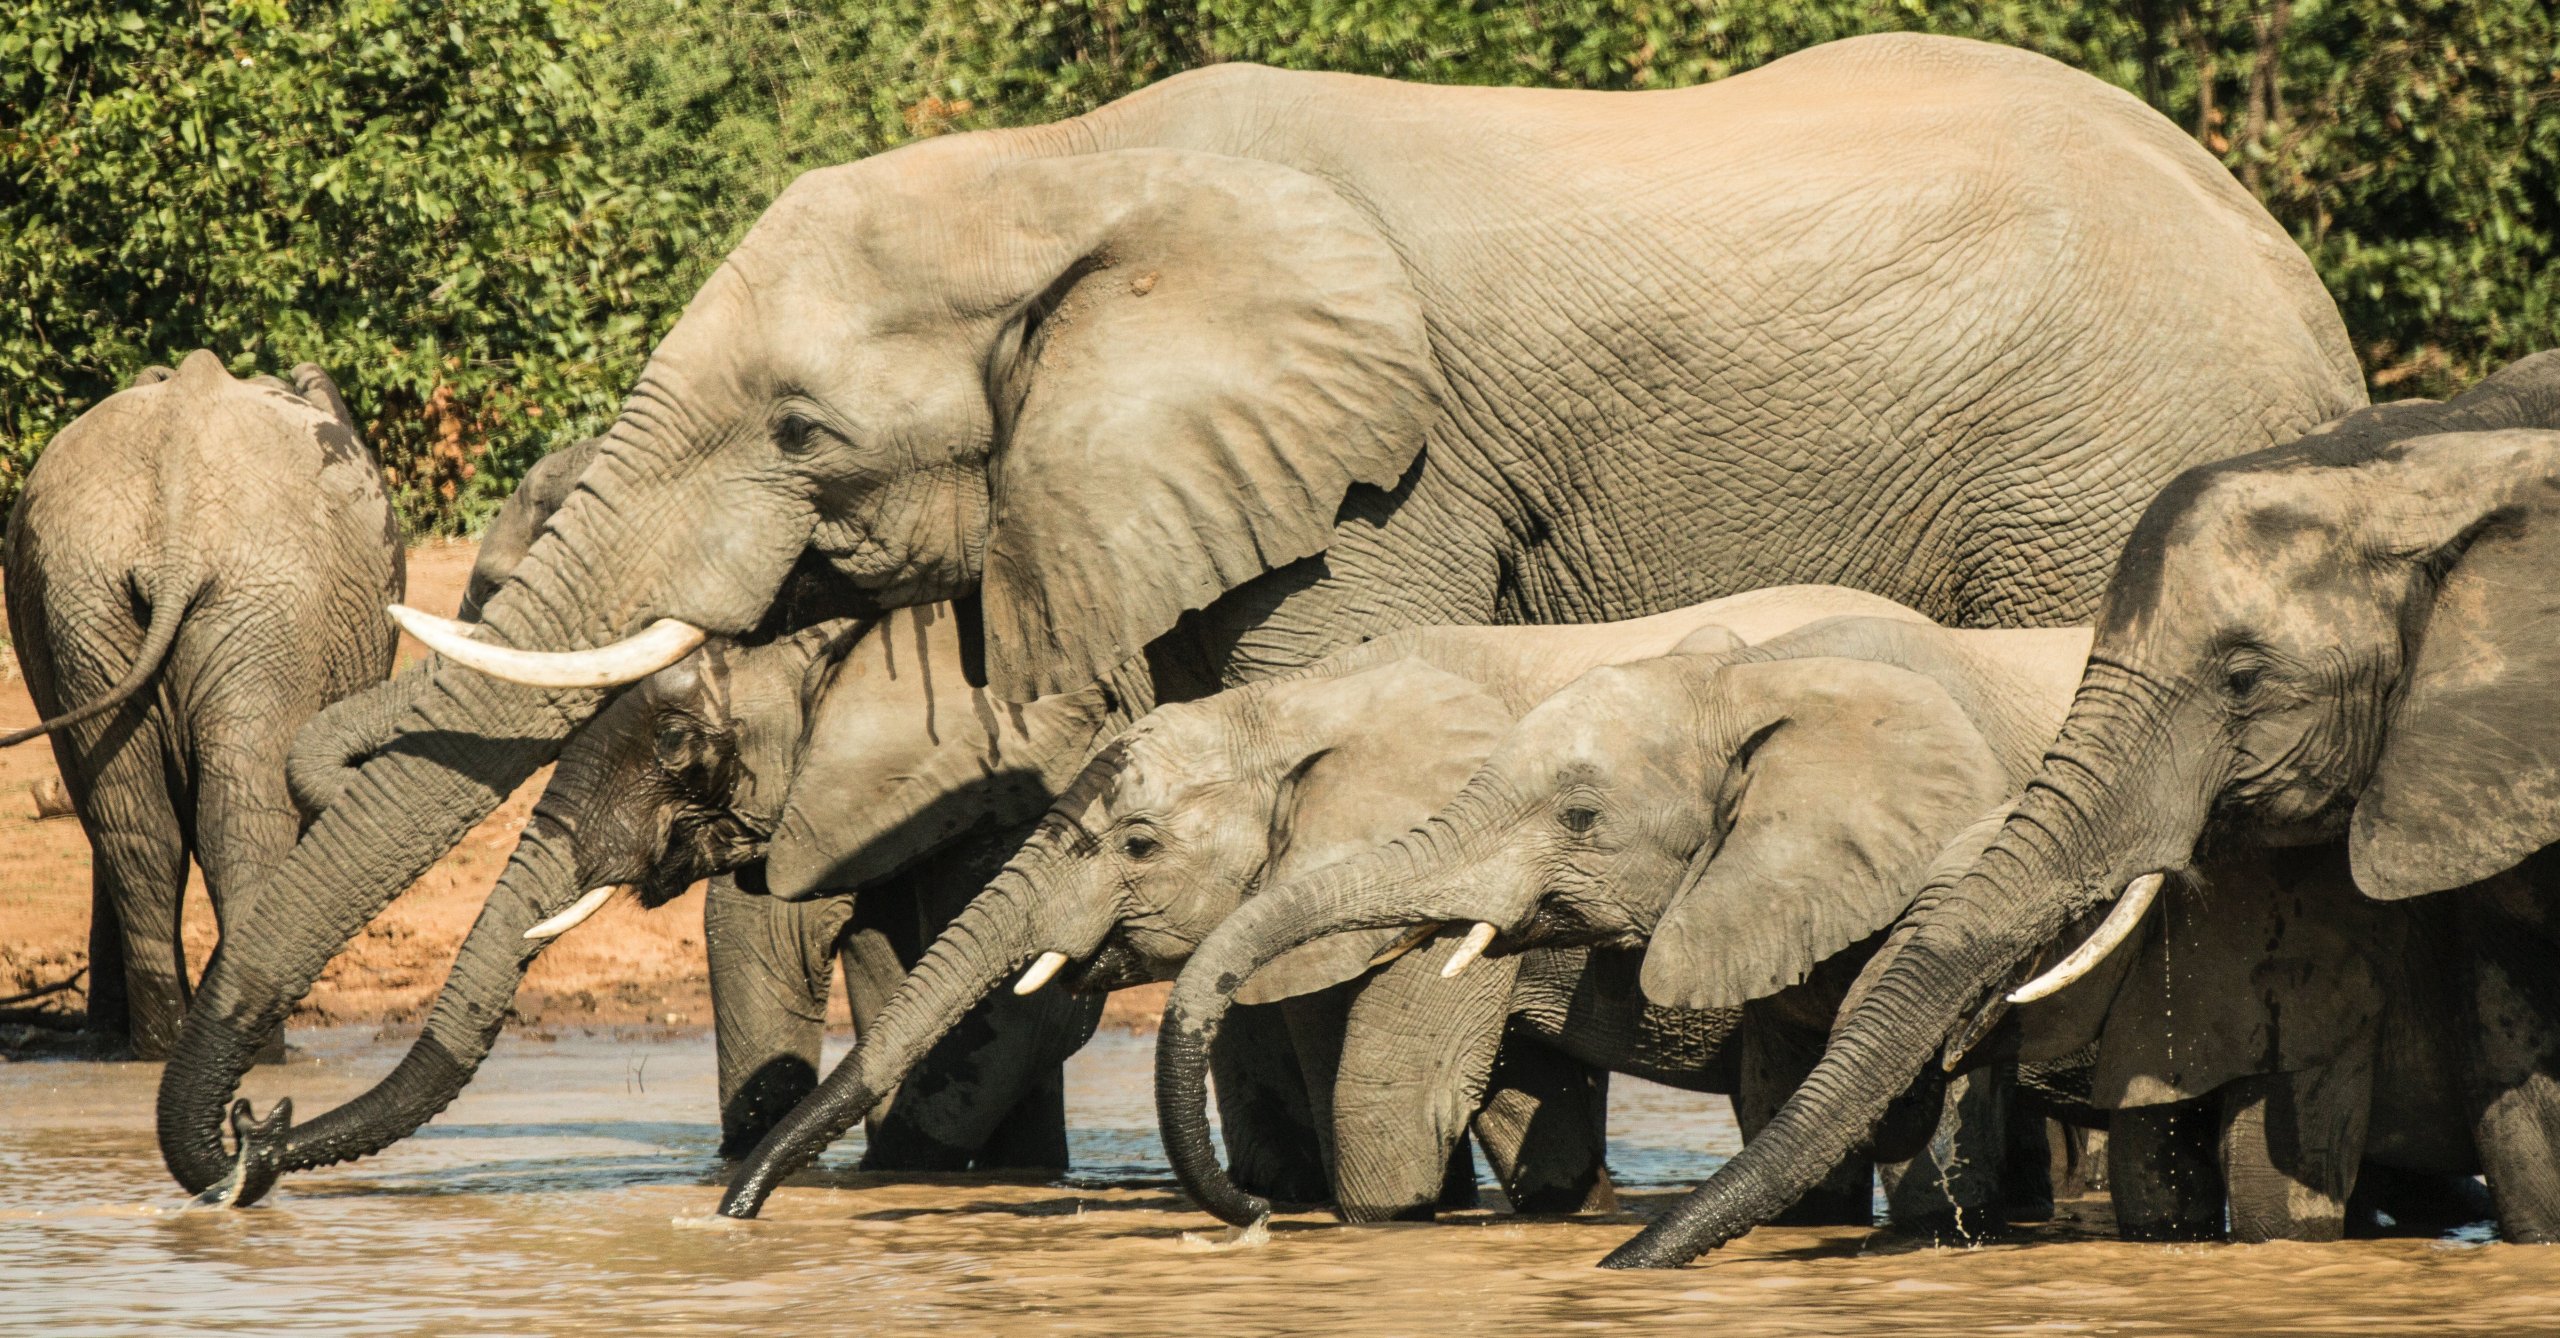 Elephants in water.